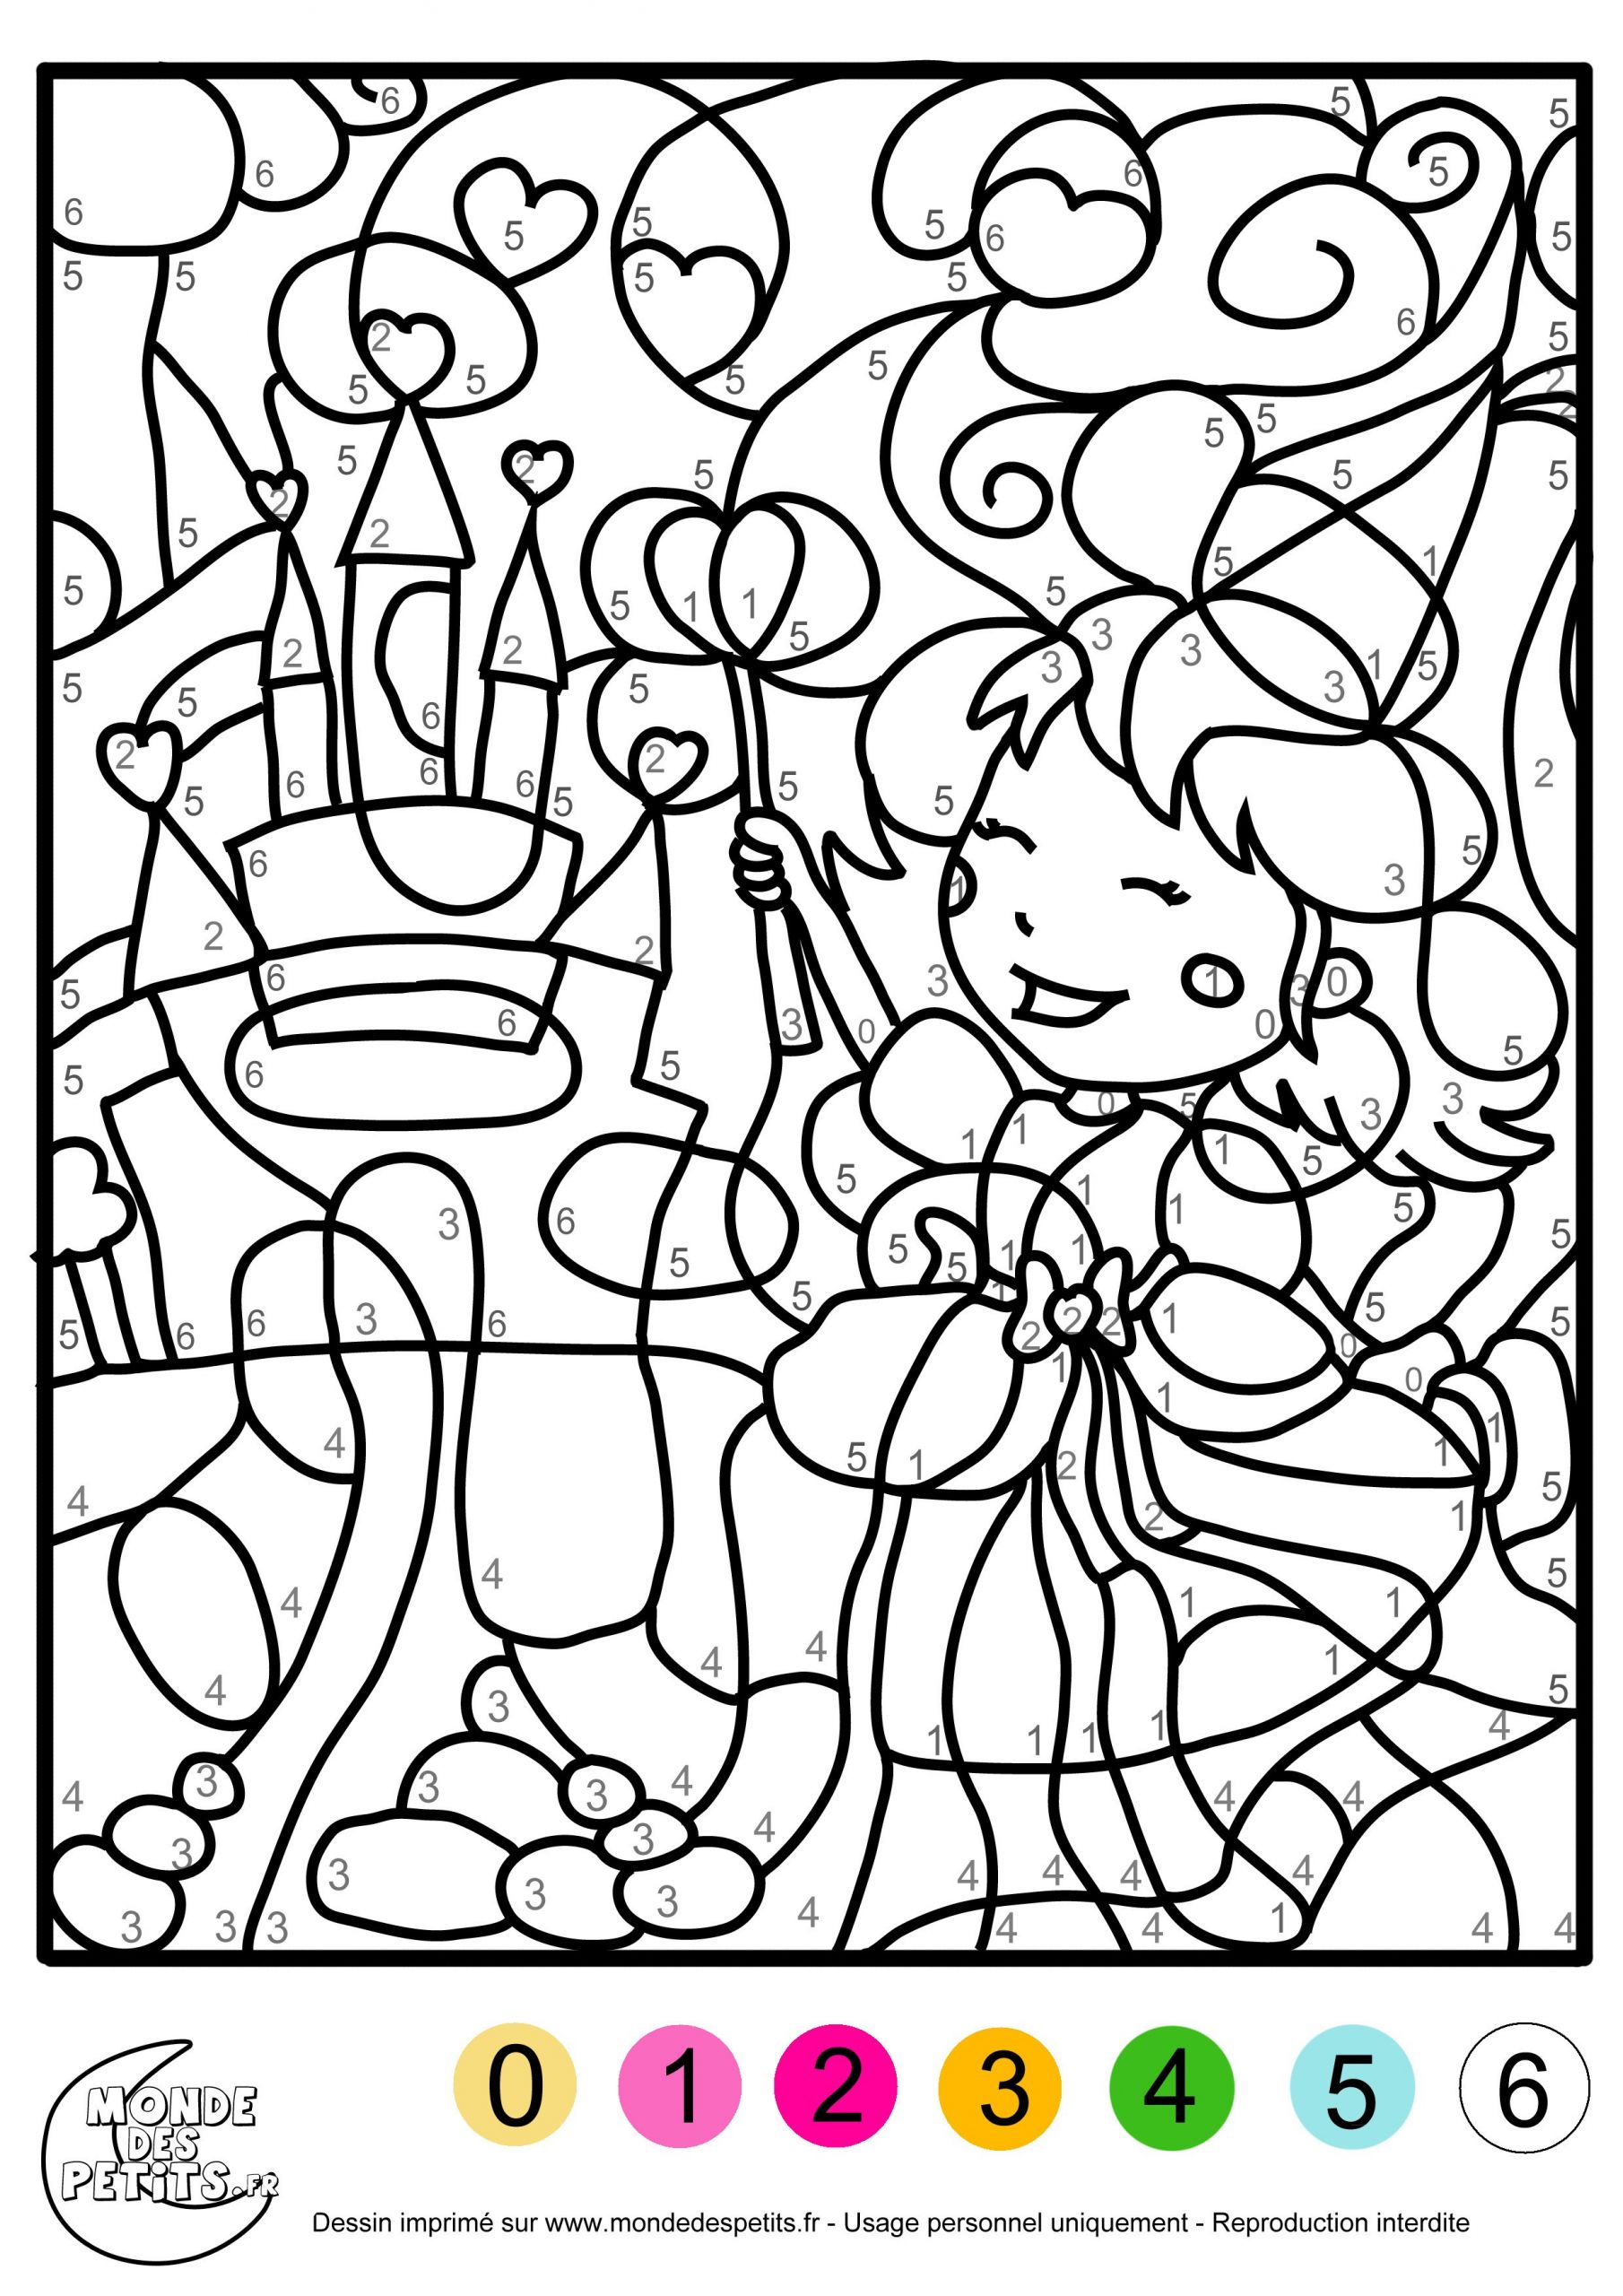 dessins gratuits colorier coloriage fille manga imprimer avec coloriage fillemanga 5 et dessin pour ado fille 13 830x1223px dessin pour ado fille